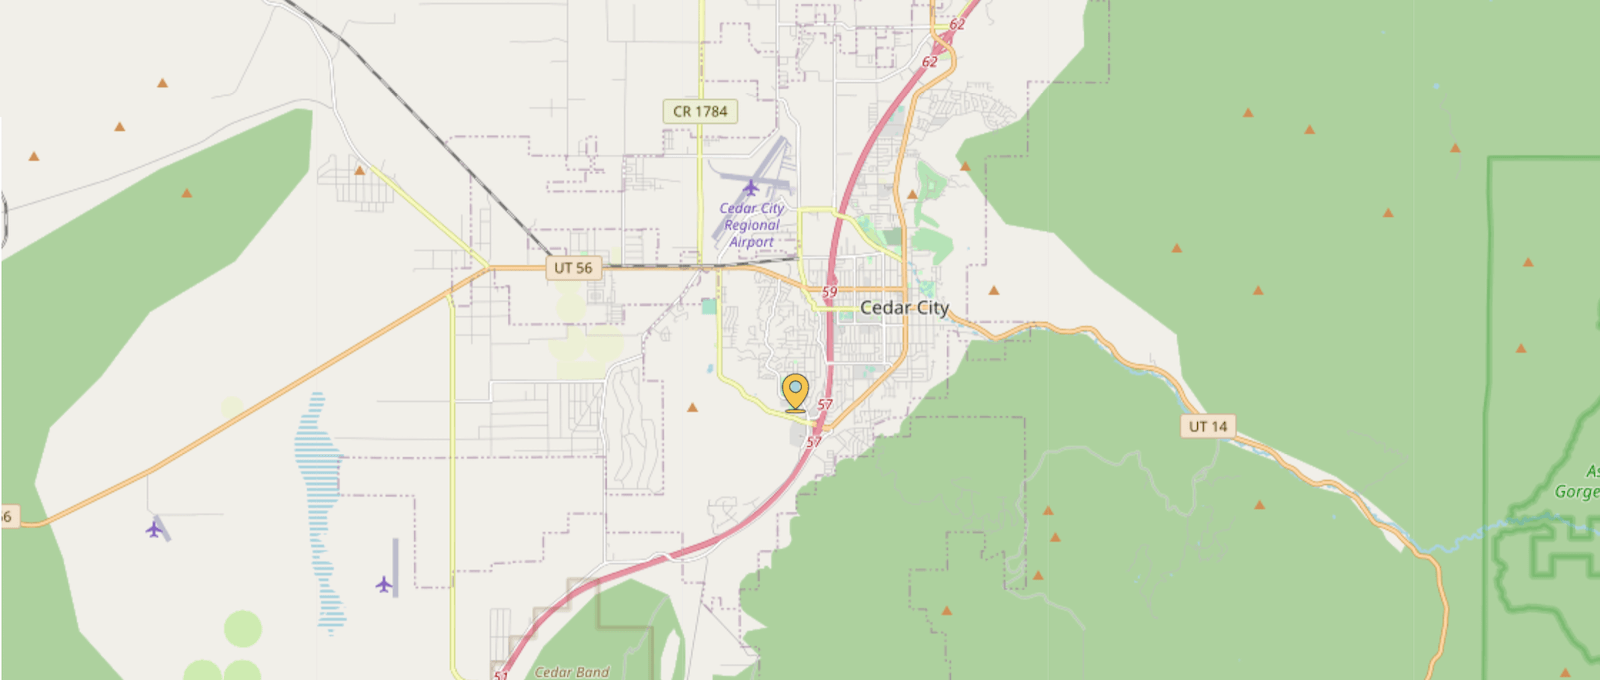 Cedar City Utah Area InfoWest WiFi Hotspots Map